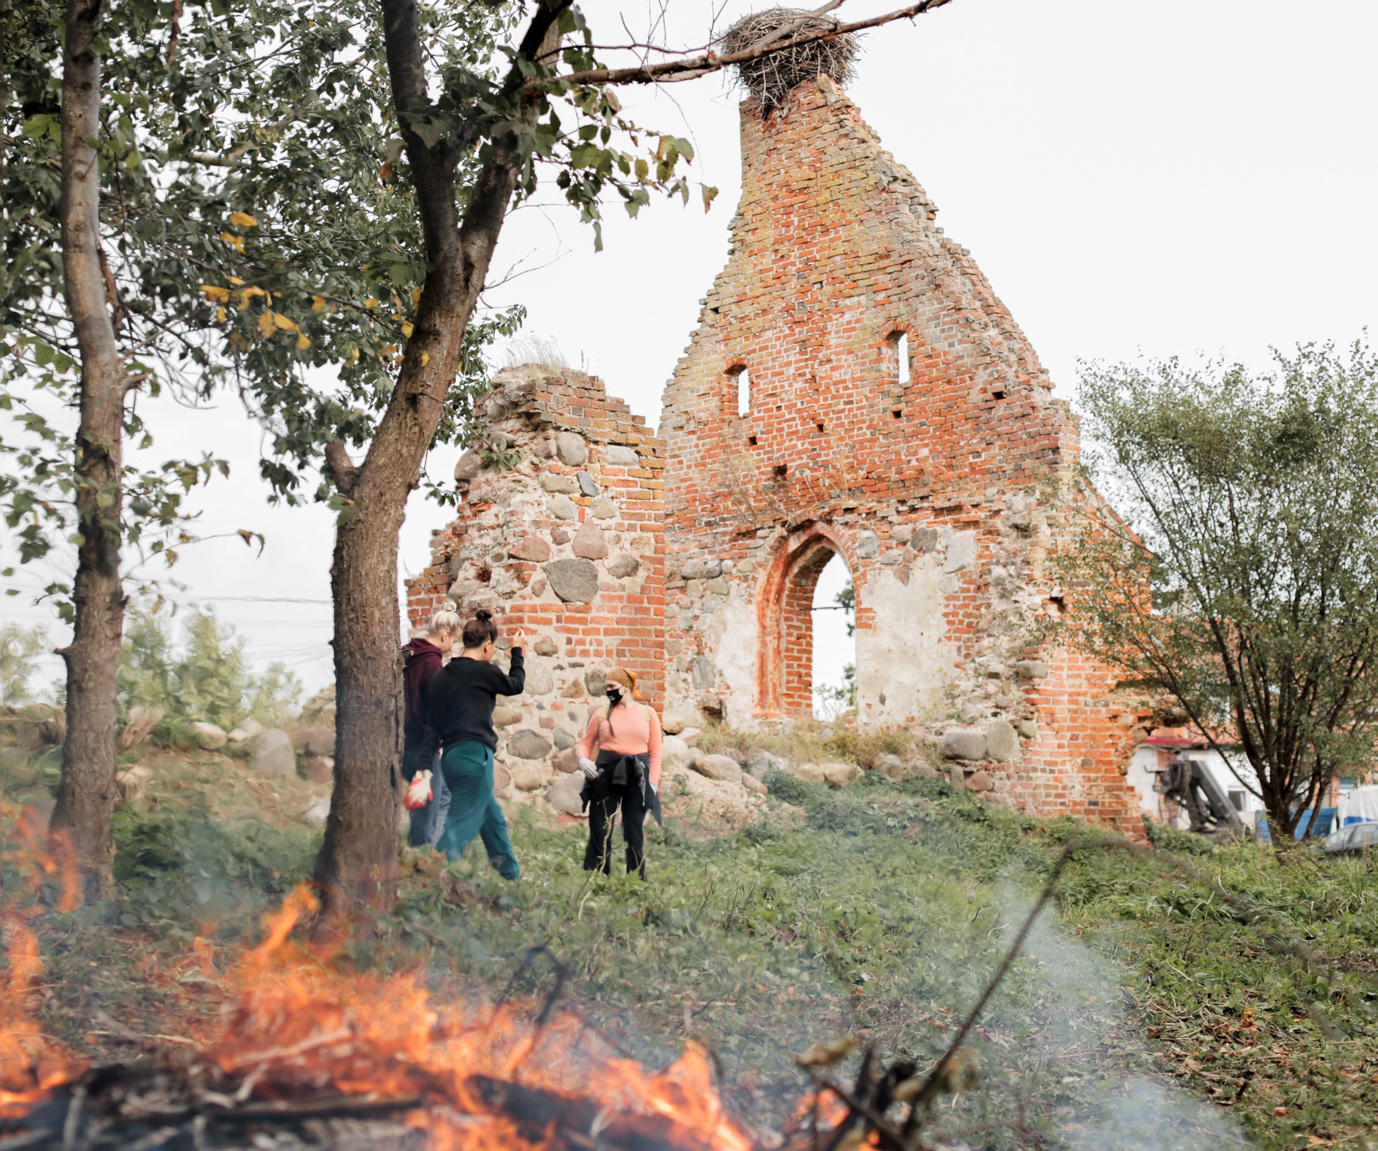 Субботник сообщества «Хранители руин» у Кирхи Лихтенхагена